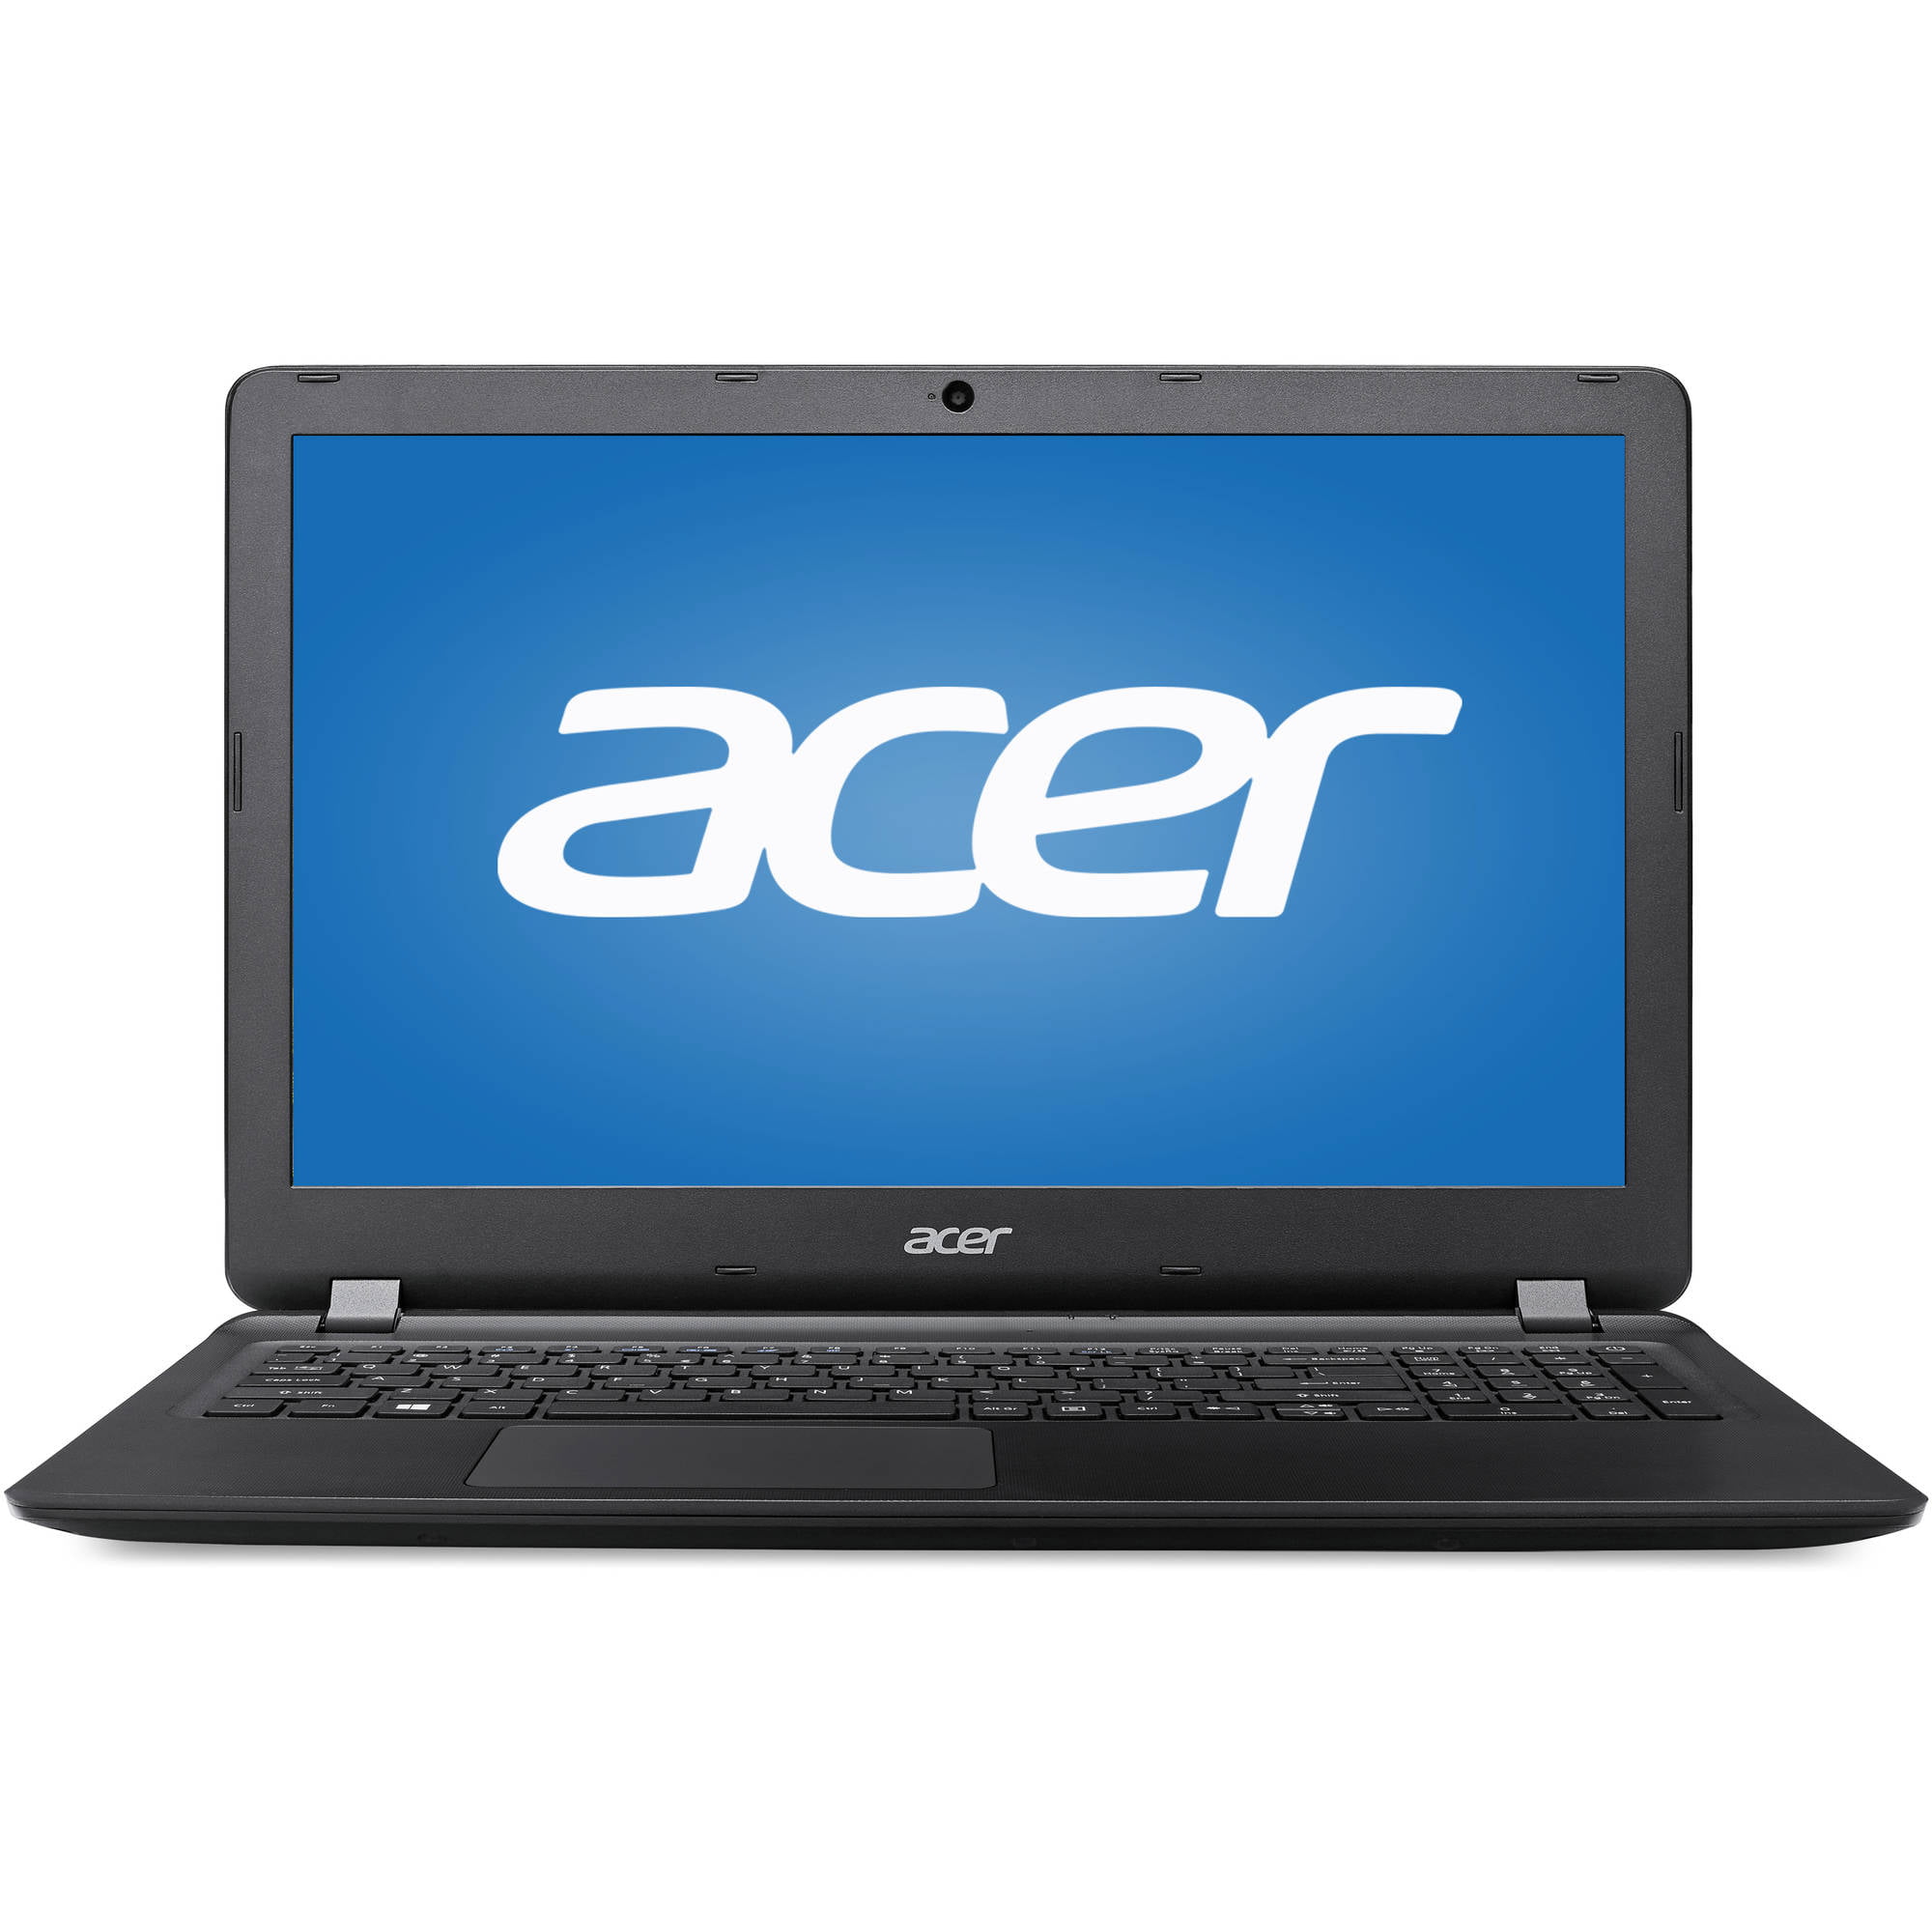 Acer Aspire ES1-572-31XL 15.6″ Laptop, Core i3-6100U, 4GB RAM, 1TB HDD